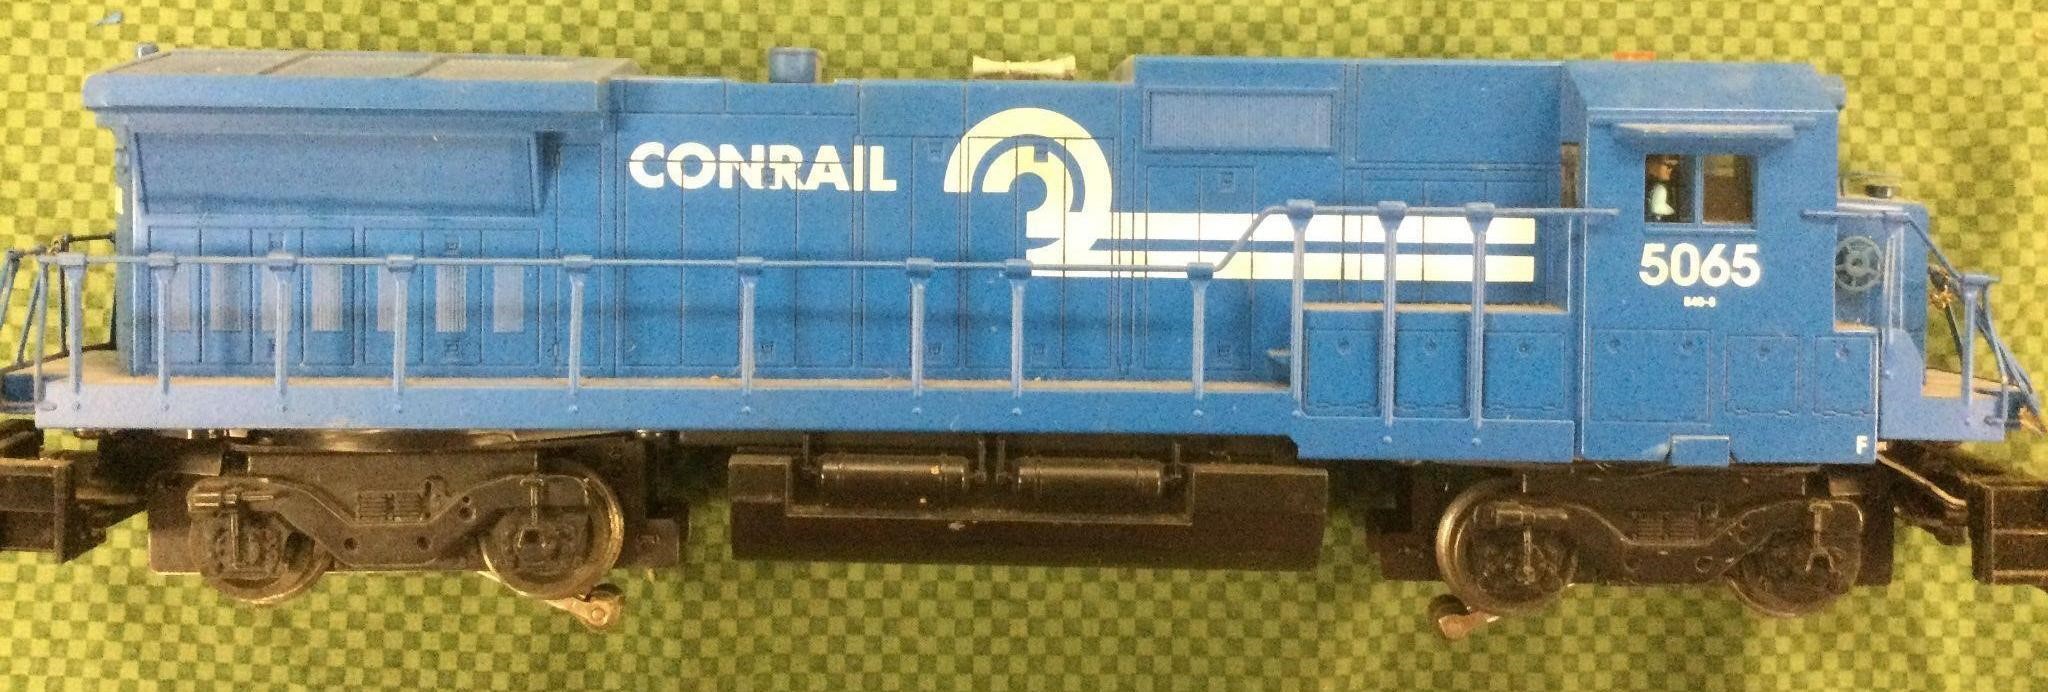 Scarce Lionel Conrail Diesel Train